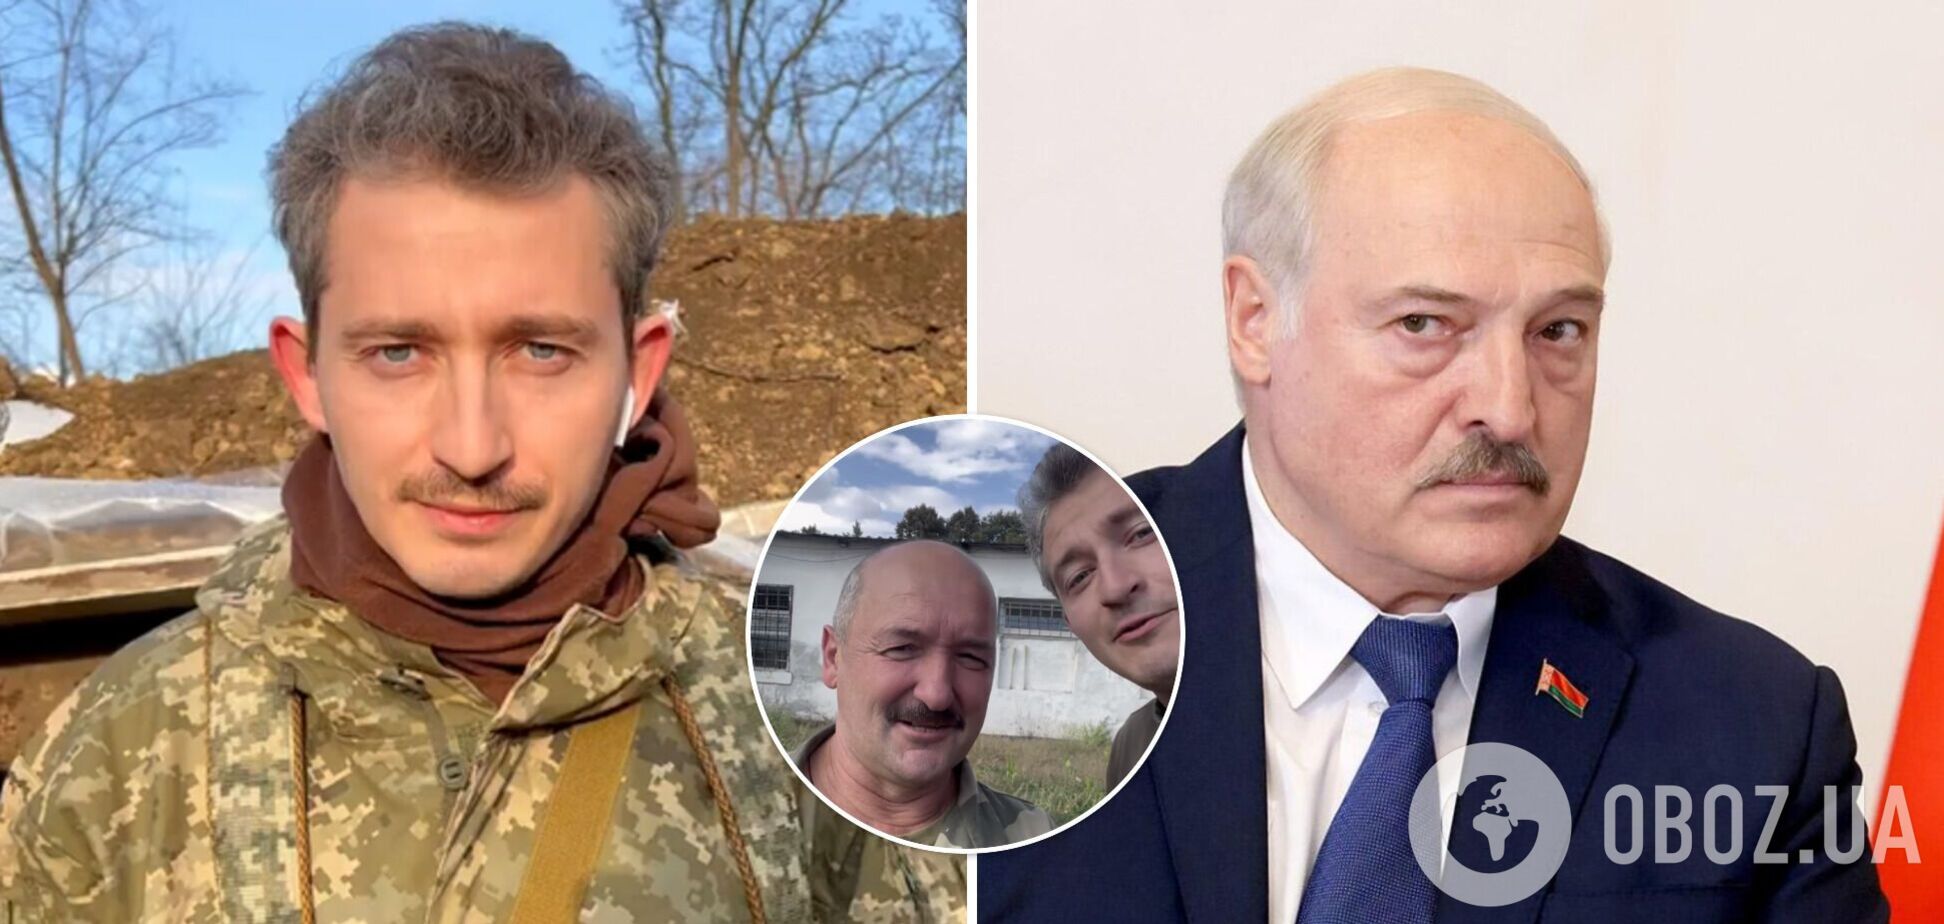 Коля Сєрга запропонував білорусам послати Лукашенка і знайшов їм нового президента з Тернополя